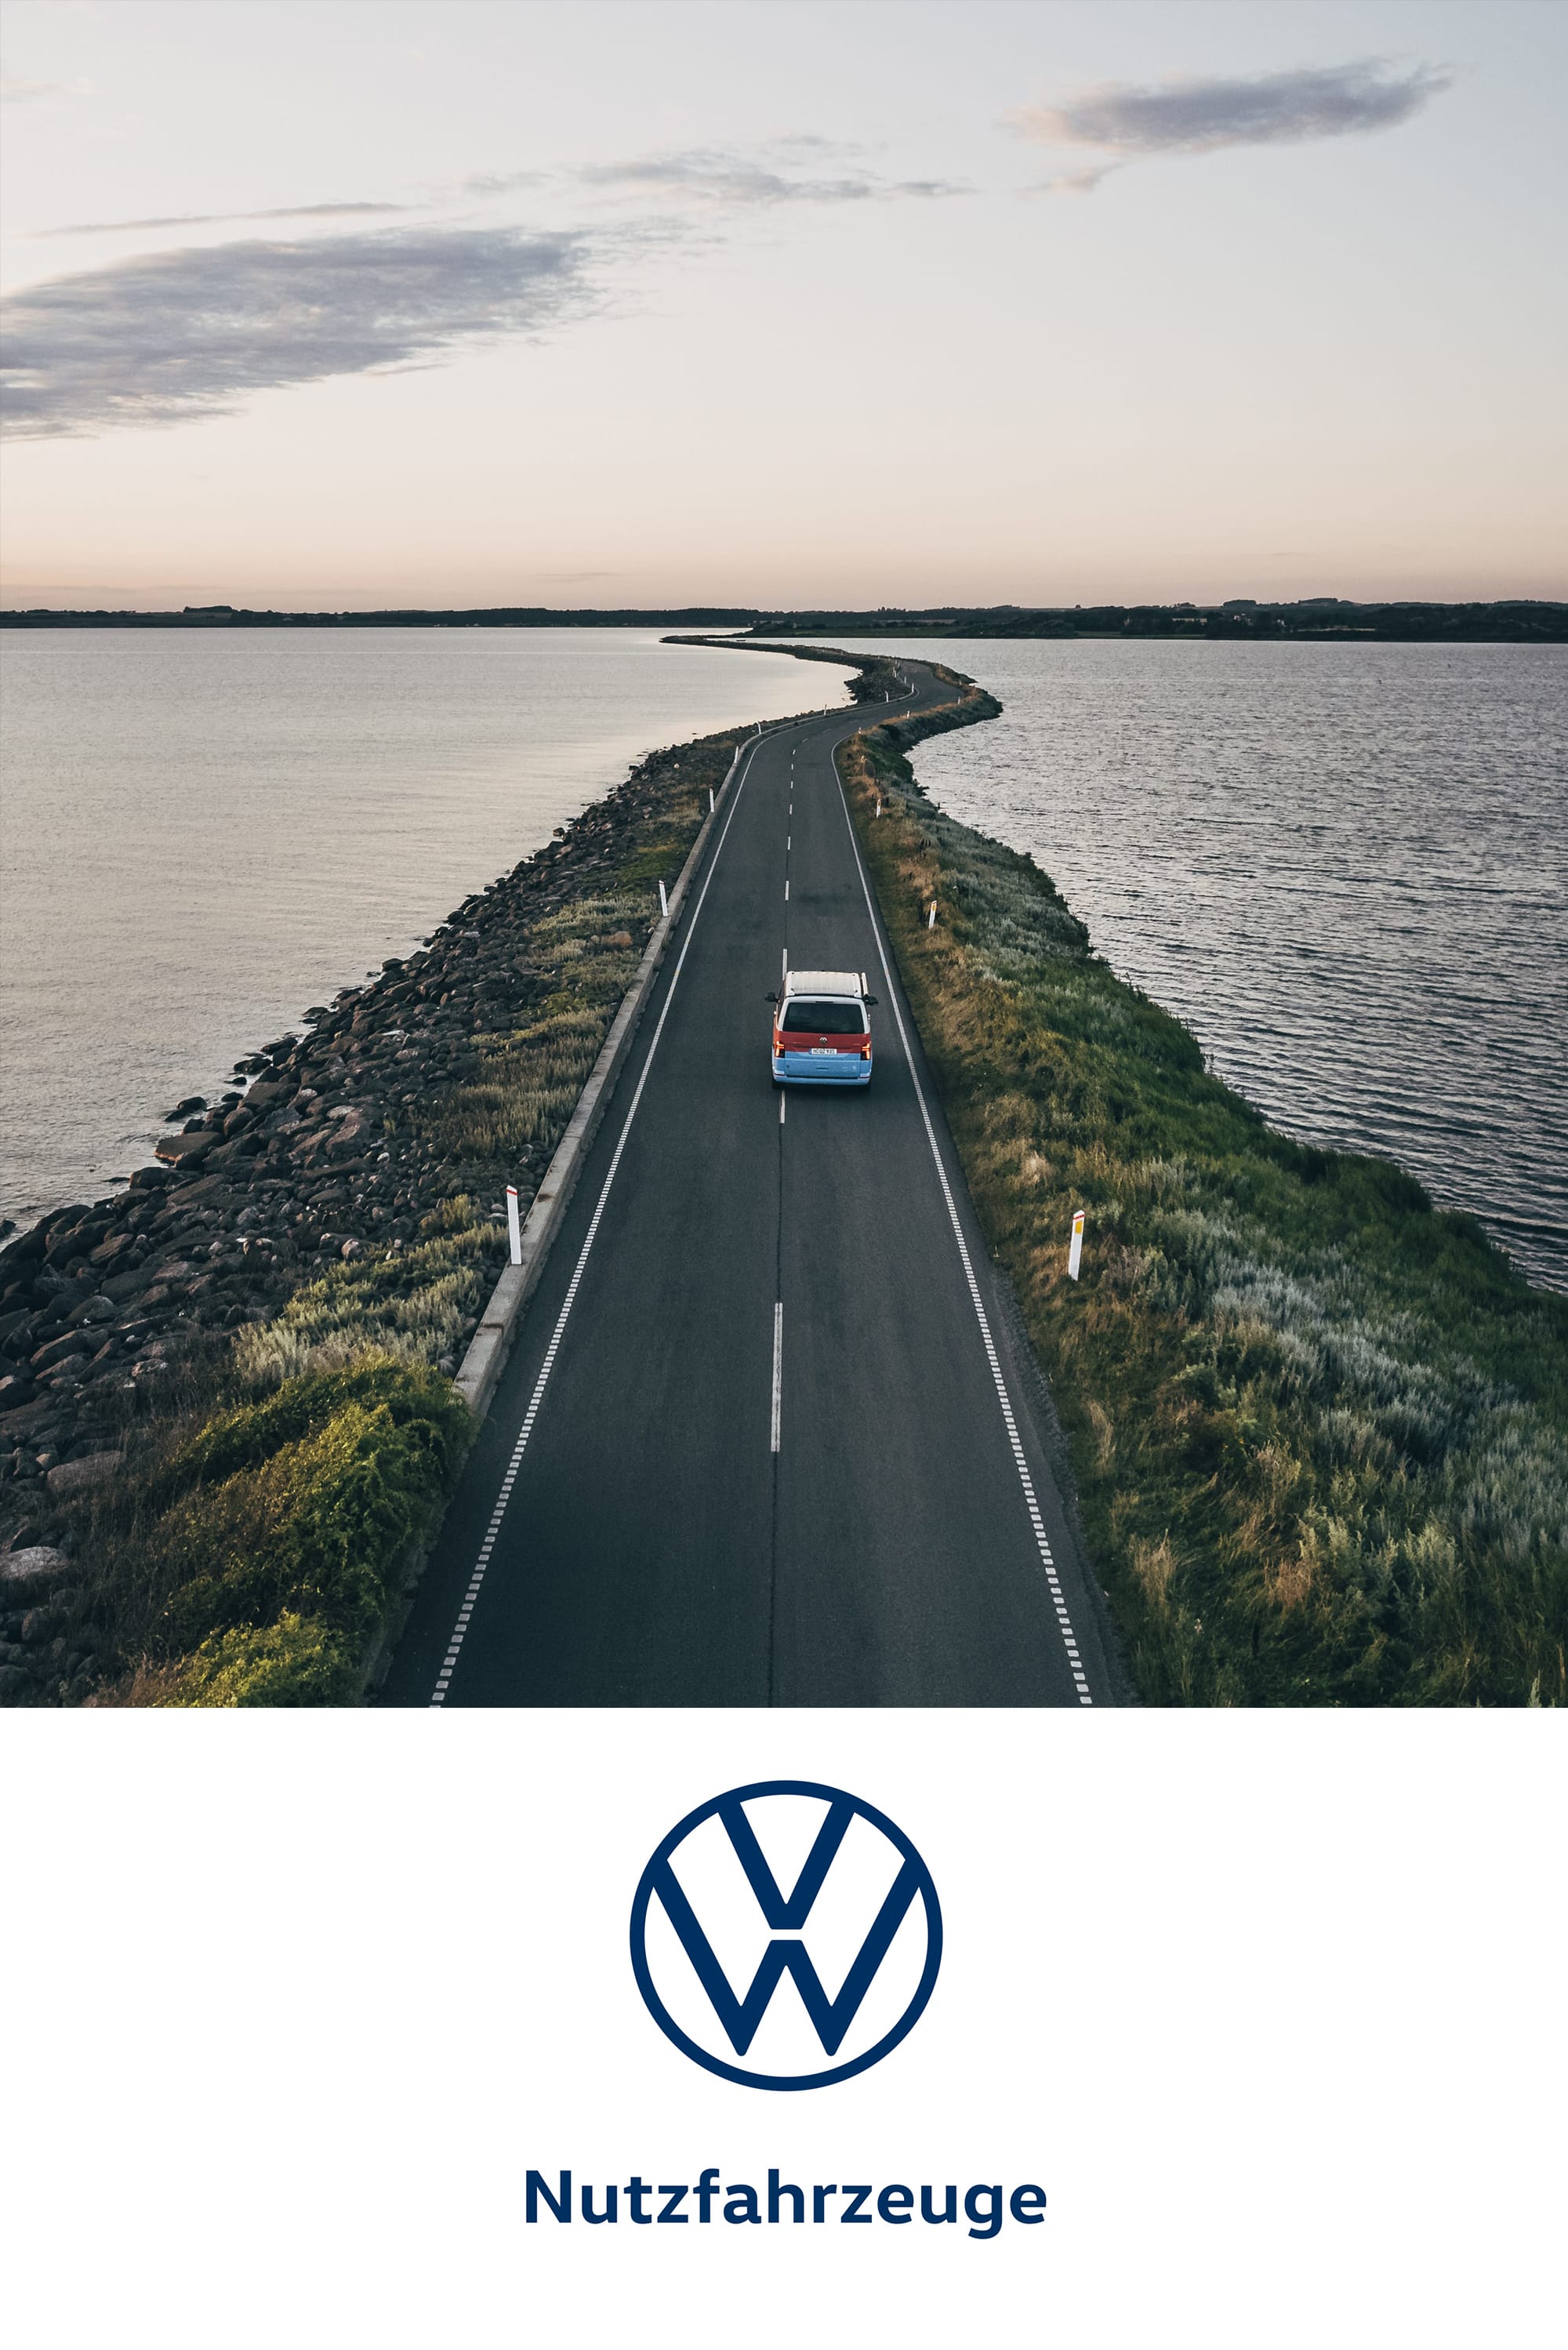 Volkswagen Denmark